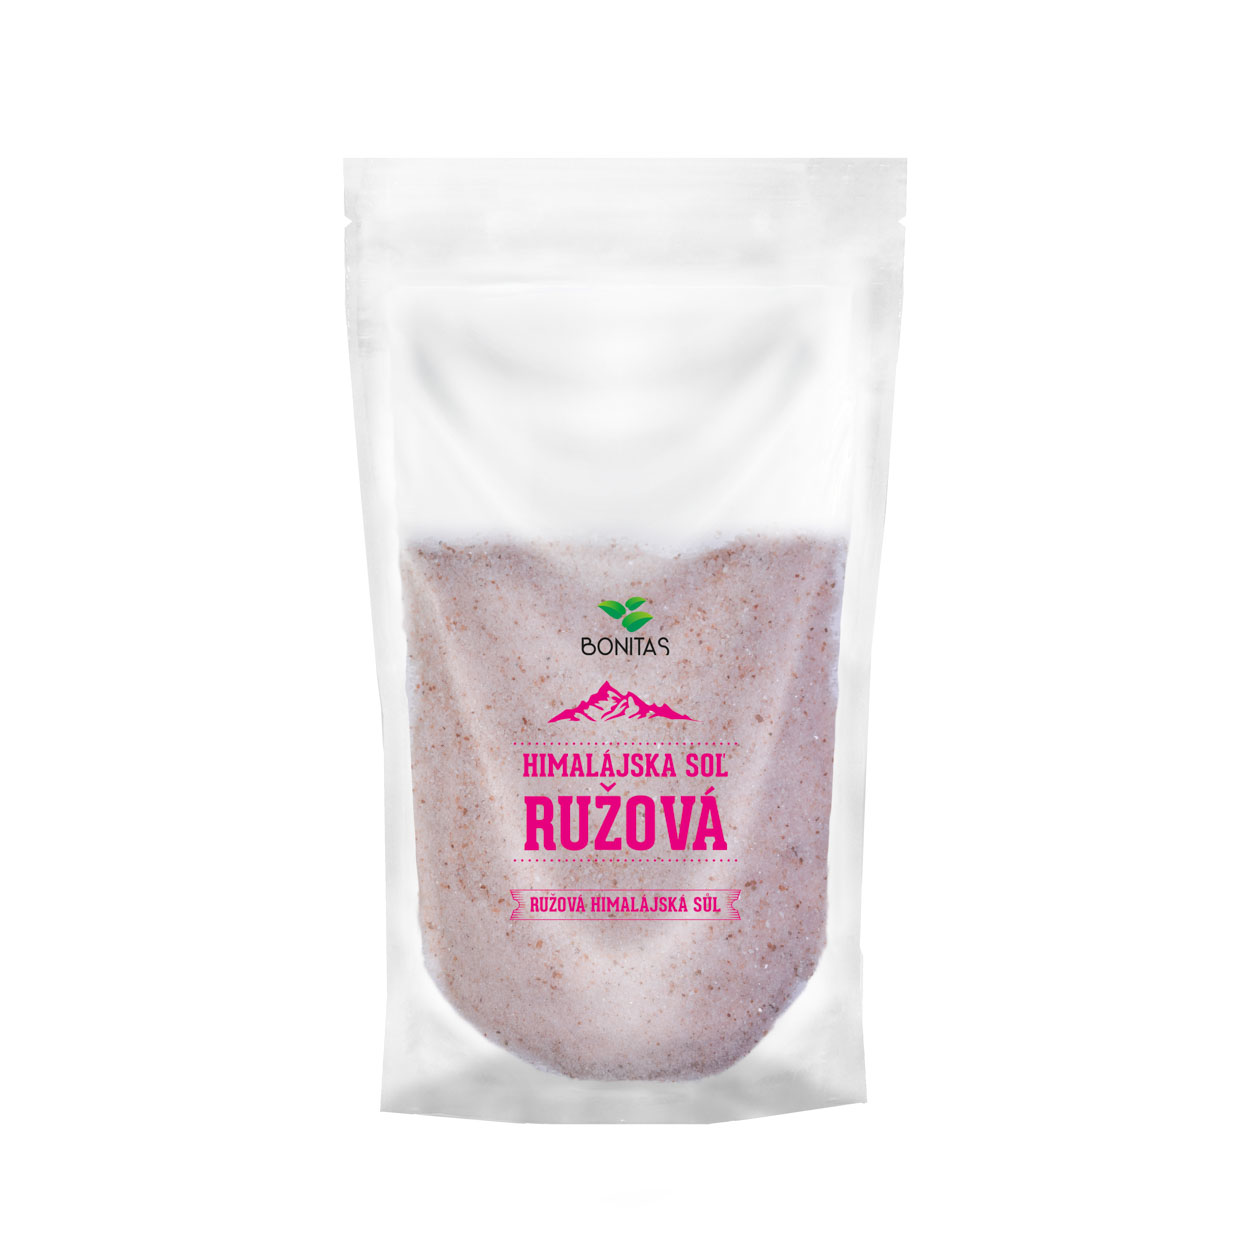 Bonitas Himalájská růžová sůl jemná 500g